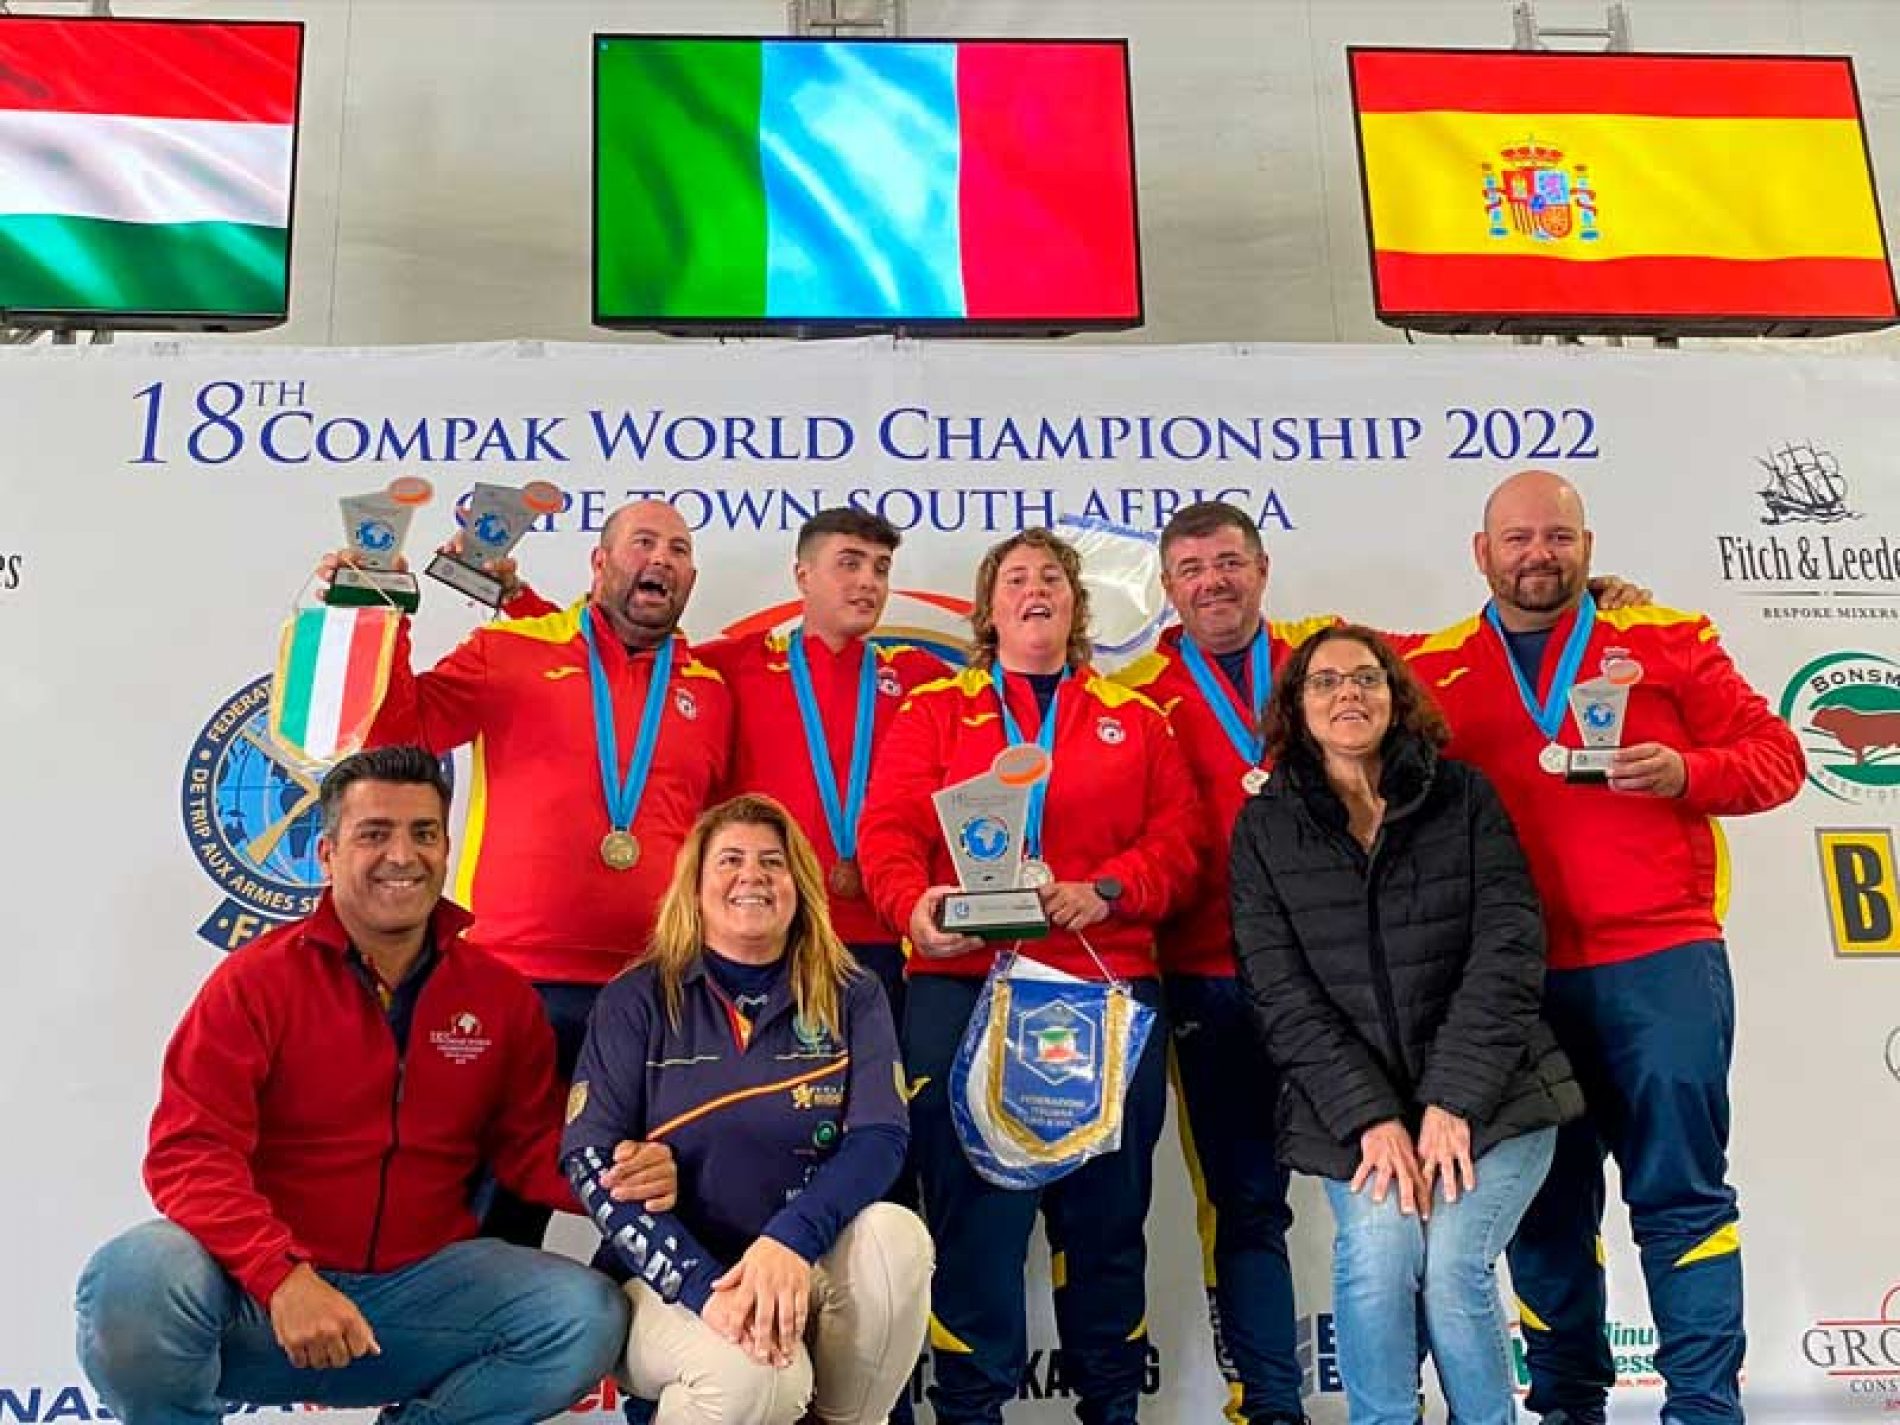 Destacada actuación del equipo español con cuatro medallas en el XVIII Mundial de Compak Sporting